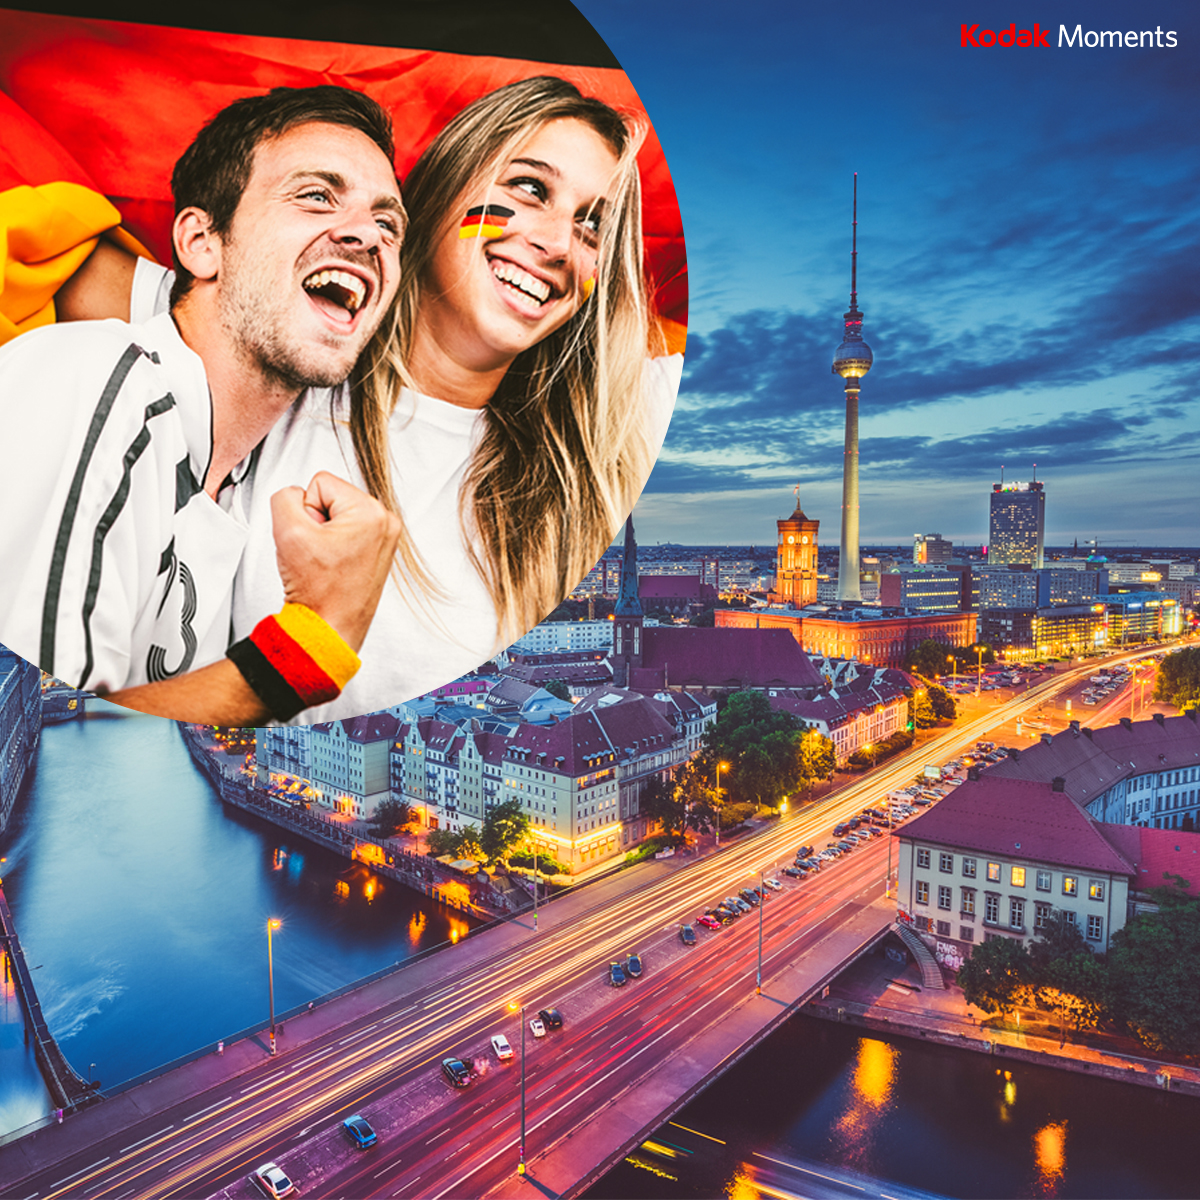 #Gewinnspiel | Könnt ihr euch noch an die WM 2006 ⚽️ und das besondere Gefühl im eigenen Land erinnern? Habt ihr diese tollen Momente festgehalten? Diese Emotionen könnt ihr nächsten Monat endlich wieder erleben. Habt ihr schon Lust auf die EM in Deutschland?

Eines ist sicher: Es werden wieder ganz besondere Foto-Momente entstehen! Jetzt seid ihr gefragt und könnt 3 x 1 KODAK MOMENTS Leinwand gewinnen:

👉 Abonniere uns auf Instagram >> 👍
👉 Tage @kodakmoments_de in deiner Story >>
👉 Markiere eine Person in den Kommentaren, mit der du gerne ein EM-Selfie machen würdest! 📸>>

Ihr könnt exklusiv bis zum 15.06.2024 am Gewinnspiel teilnehmen. 

Wir drücken euch die Daumen! ☺️

Teilnahmebedingungen: https://www.facebook.com/notes/10158691585679840/
------------------------------------------------------------------------
#gewinnspiele #emgewinnspiel #instagewinnspiel #em #em24 #em2024 #sommermärchen #emdeutschland #emgefühle #meinteam #einteam #euro24 #fussballem #emstuttgart #emmünchen #embelrin #emfrankfurt #emhamburg #emköln #emleipzig #emdortmund #meineem #fussballfieber #europameisterschaft #glücksmoment #fussball #instagoodmyphoto #contest